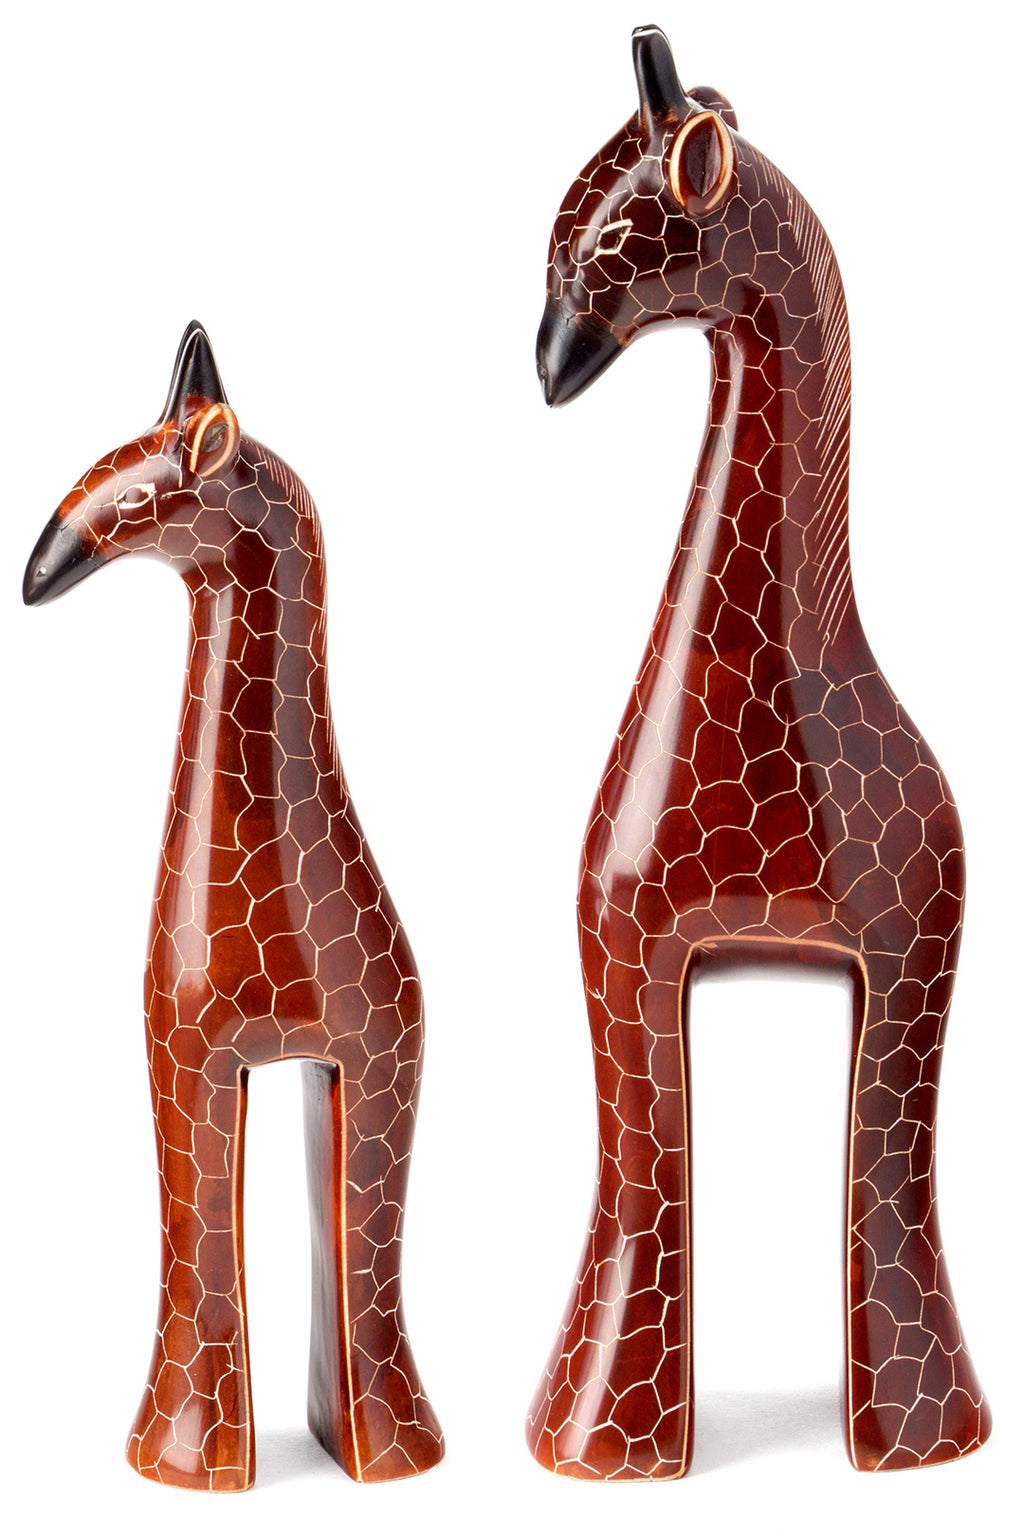 Kenyan Soapstone Stately Giraffe Sculptures KCC4A  Small Giraffe